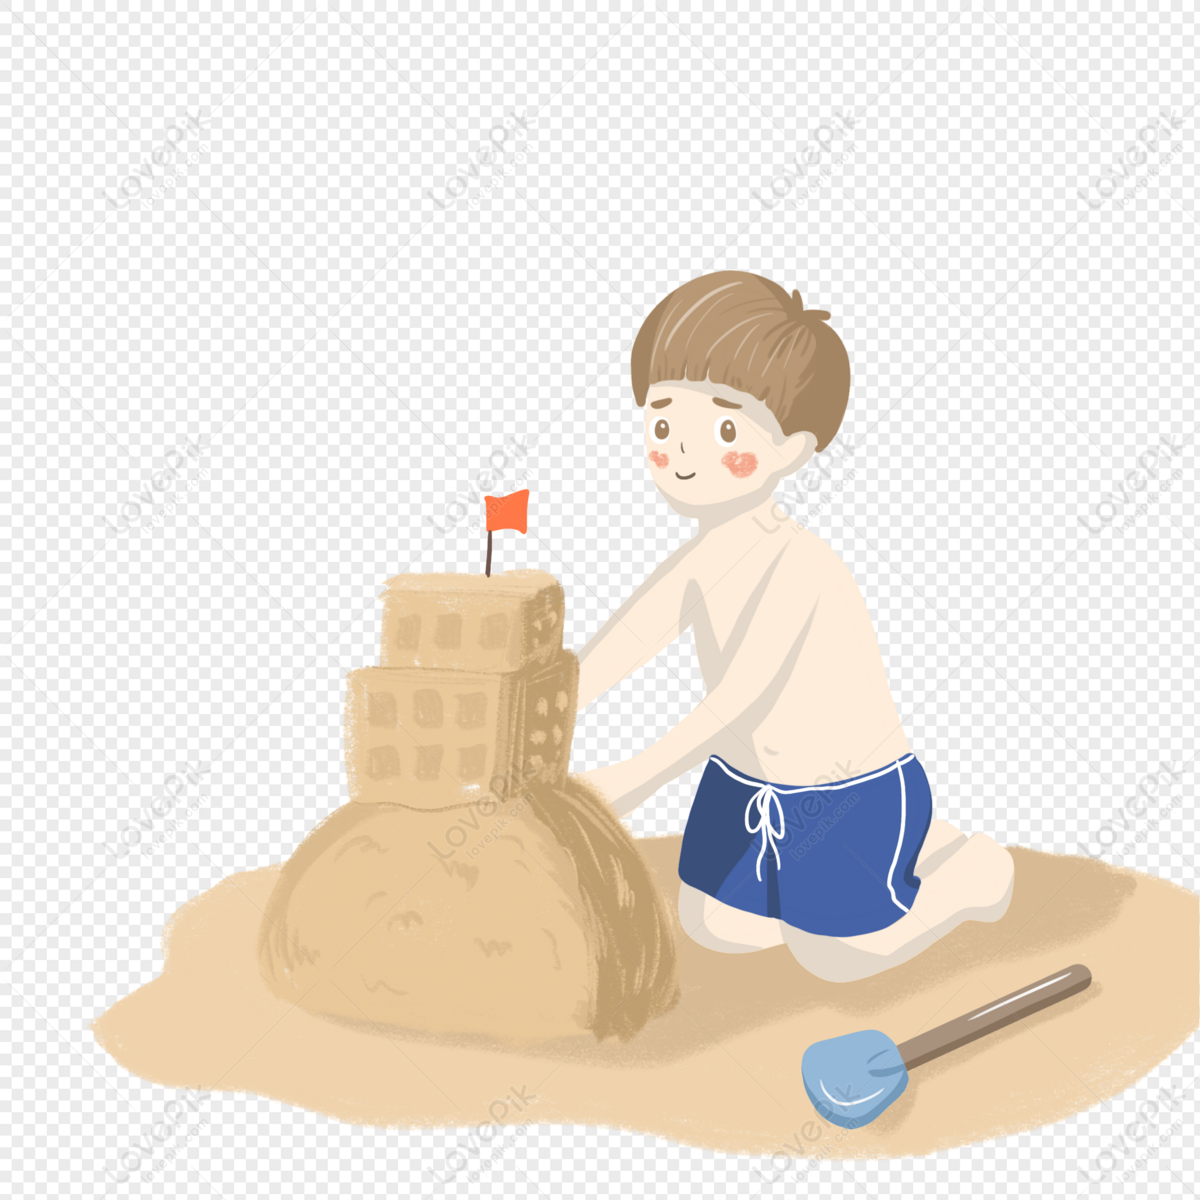 रेत के महल को ढेर करने वाला कार्टून लड़का चित्र डाउनलोड_ग्राफिक्सPRFचित्र  आईडी401425385_PSDचित्र प्रारूपमुफ्त की तस्वीर